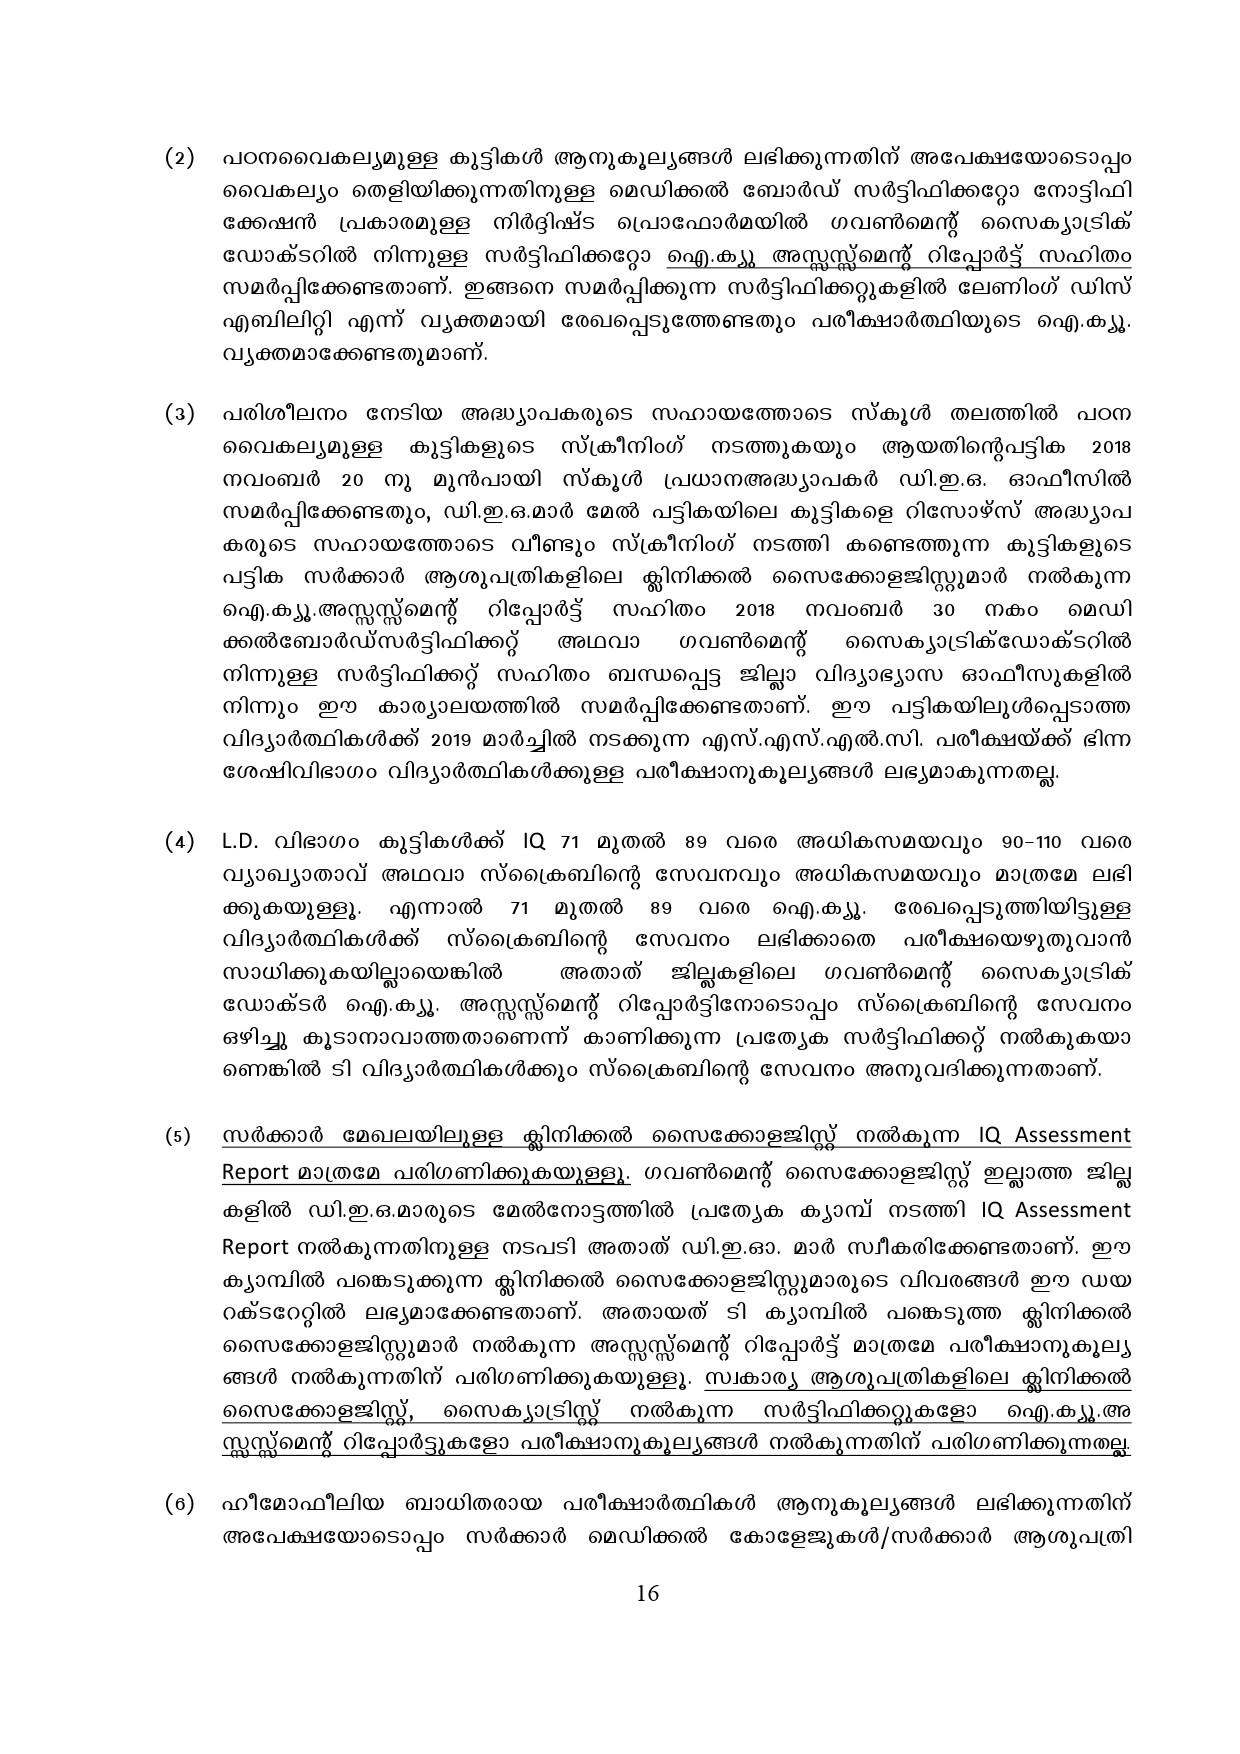 Kerala SSLC Exam Result 2019 - Notification Image 16